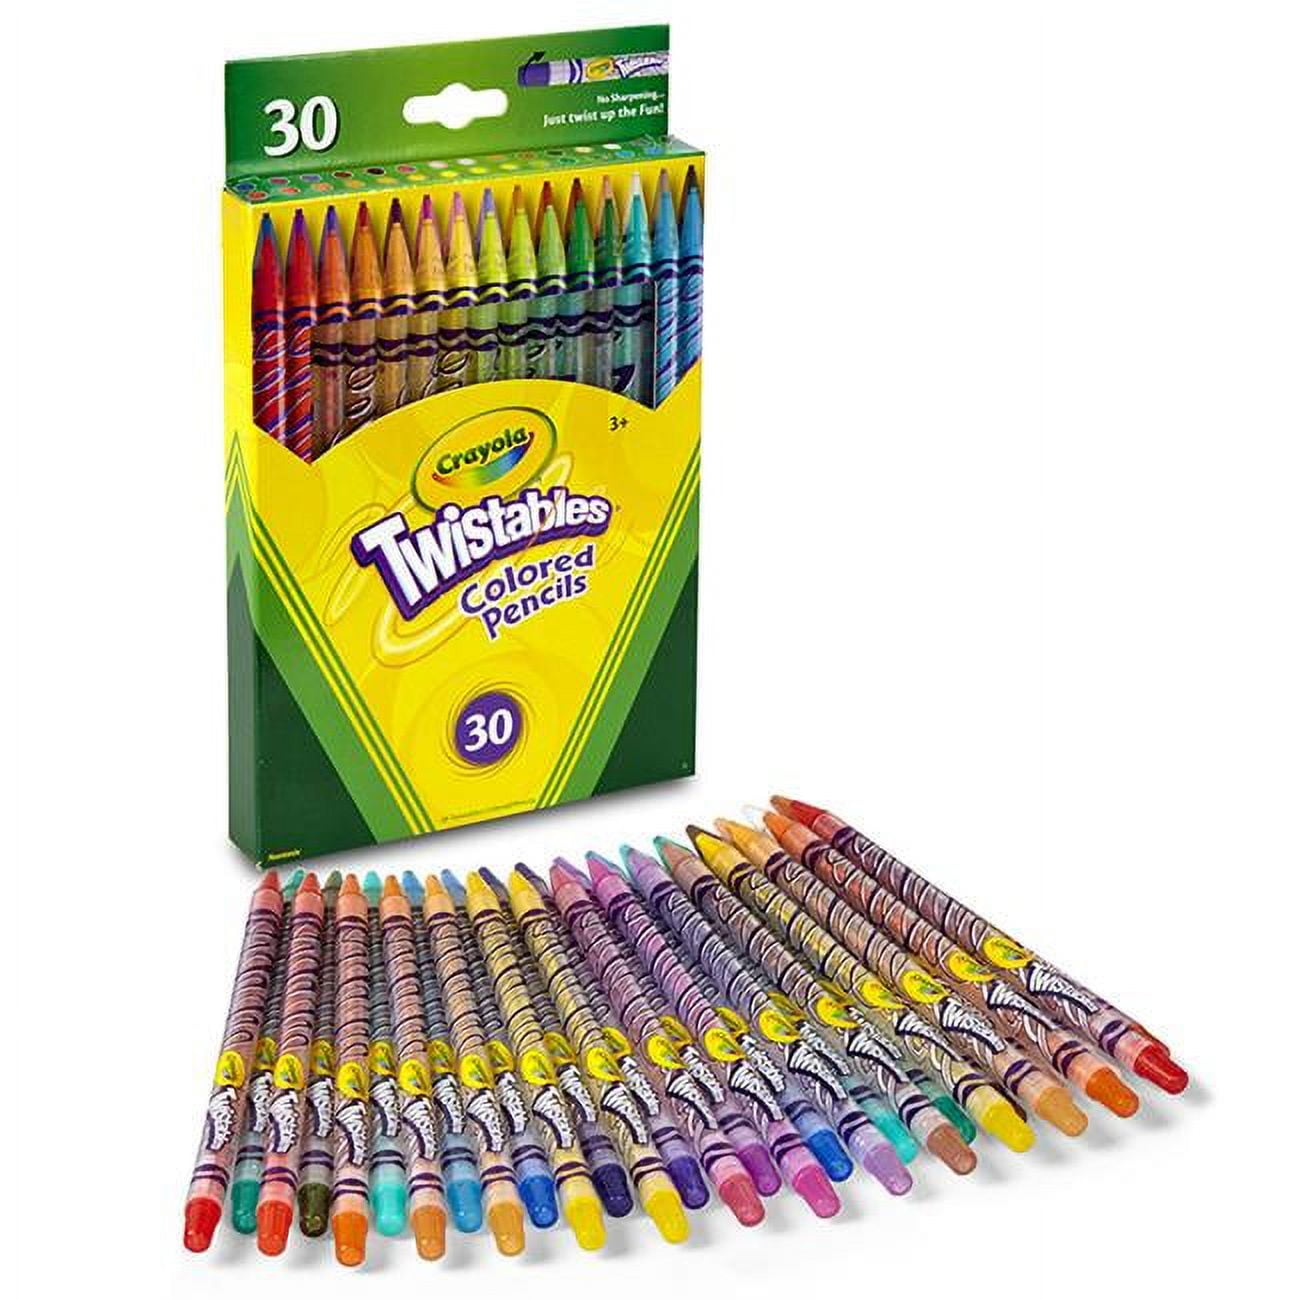 Crayola Erasable Colored Pencils, 24 Per Box, 3 Boxes